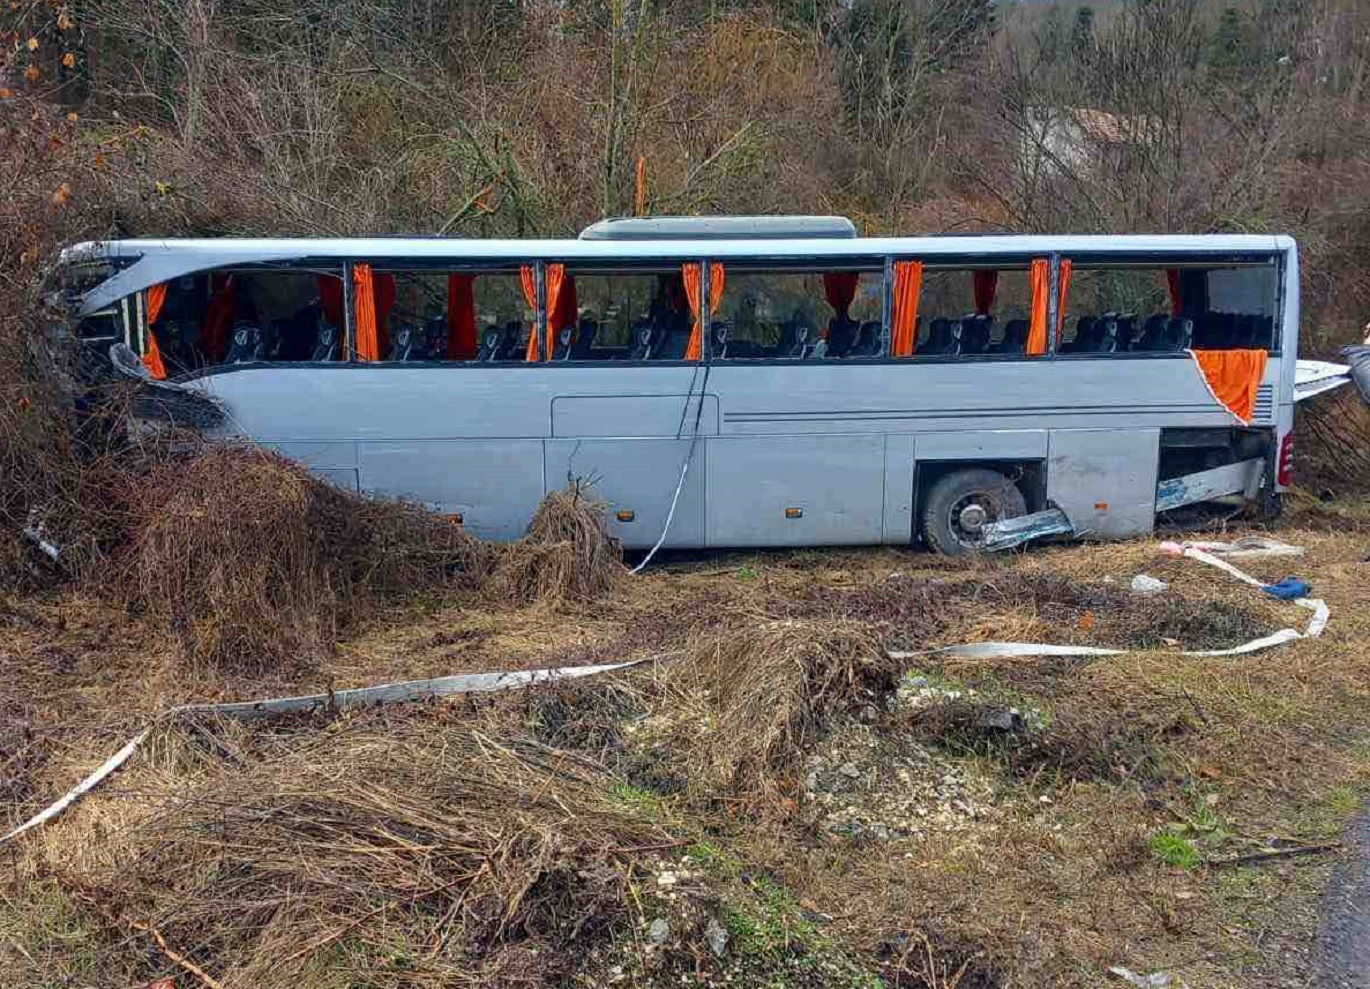 Τροχαίο στη Βουλγαρία: «Οι επιβάτες βγήκαν από τα σπασμένα τζάμια του λεωφορείου» λέει Τούρκος οδηγός νταλίκας